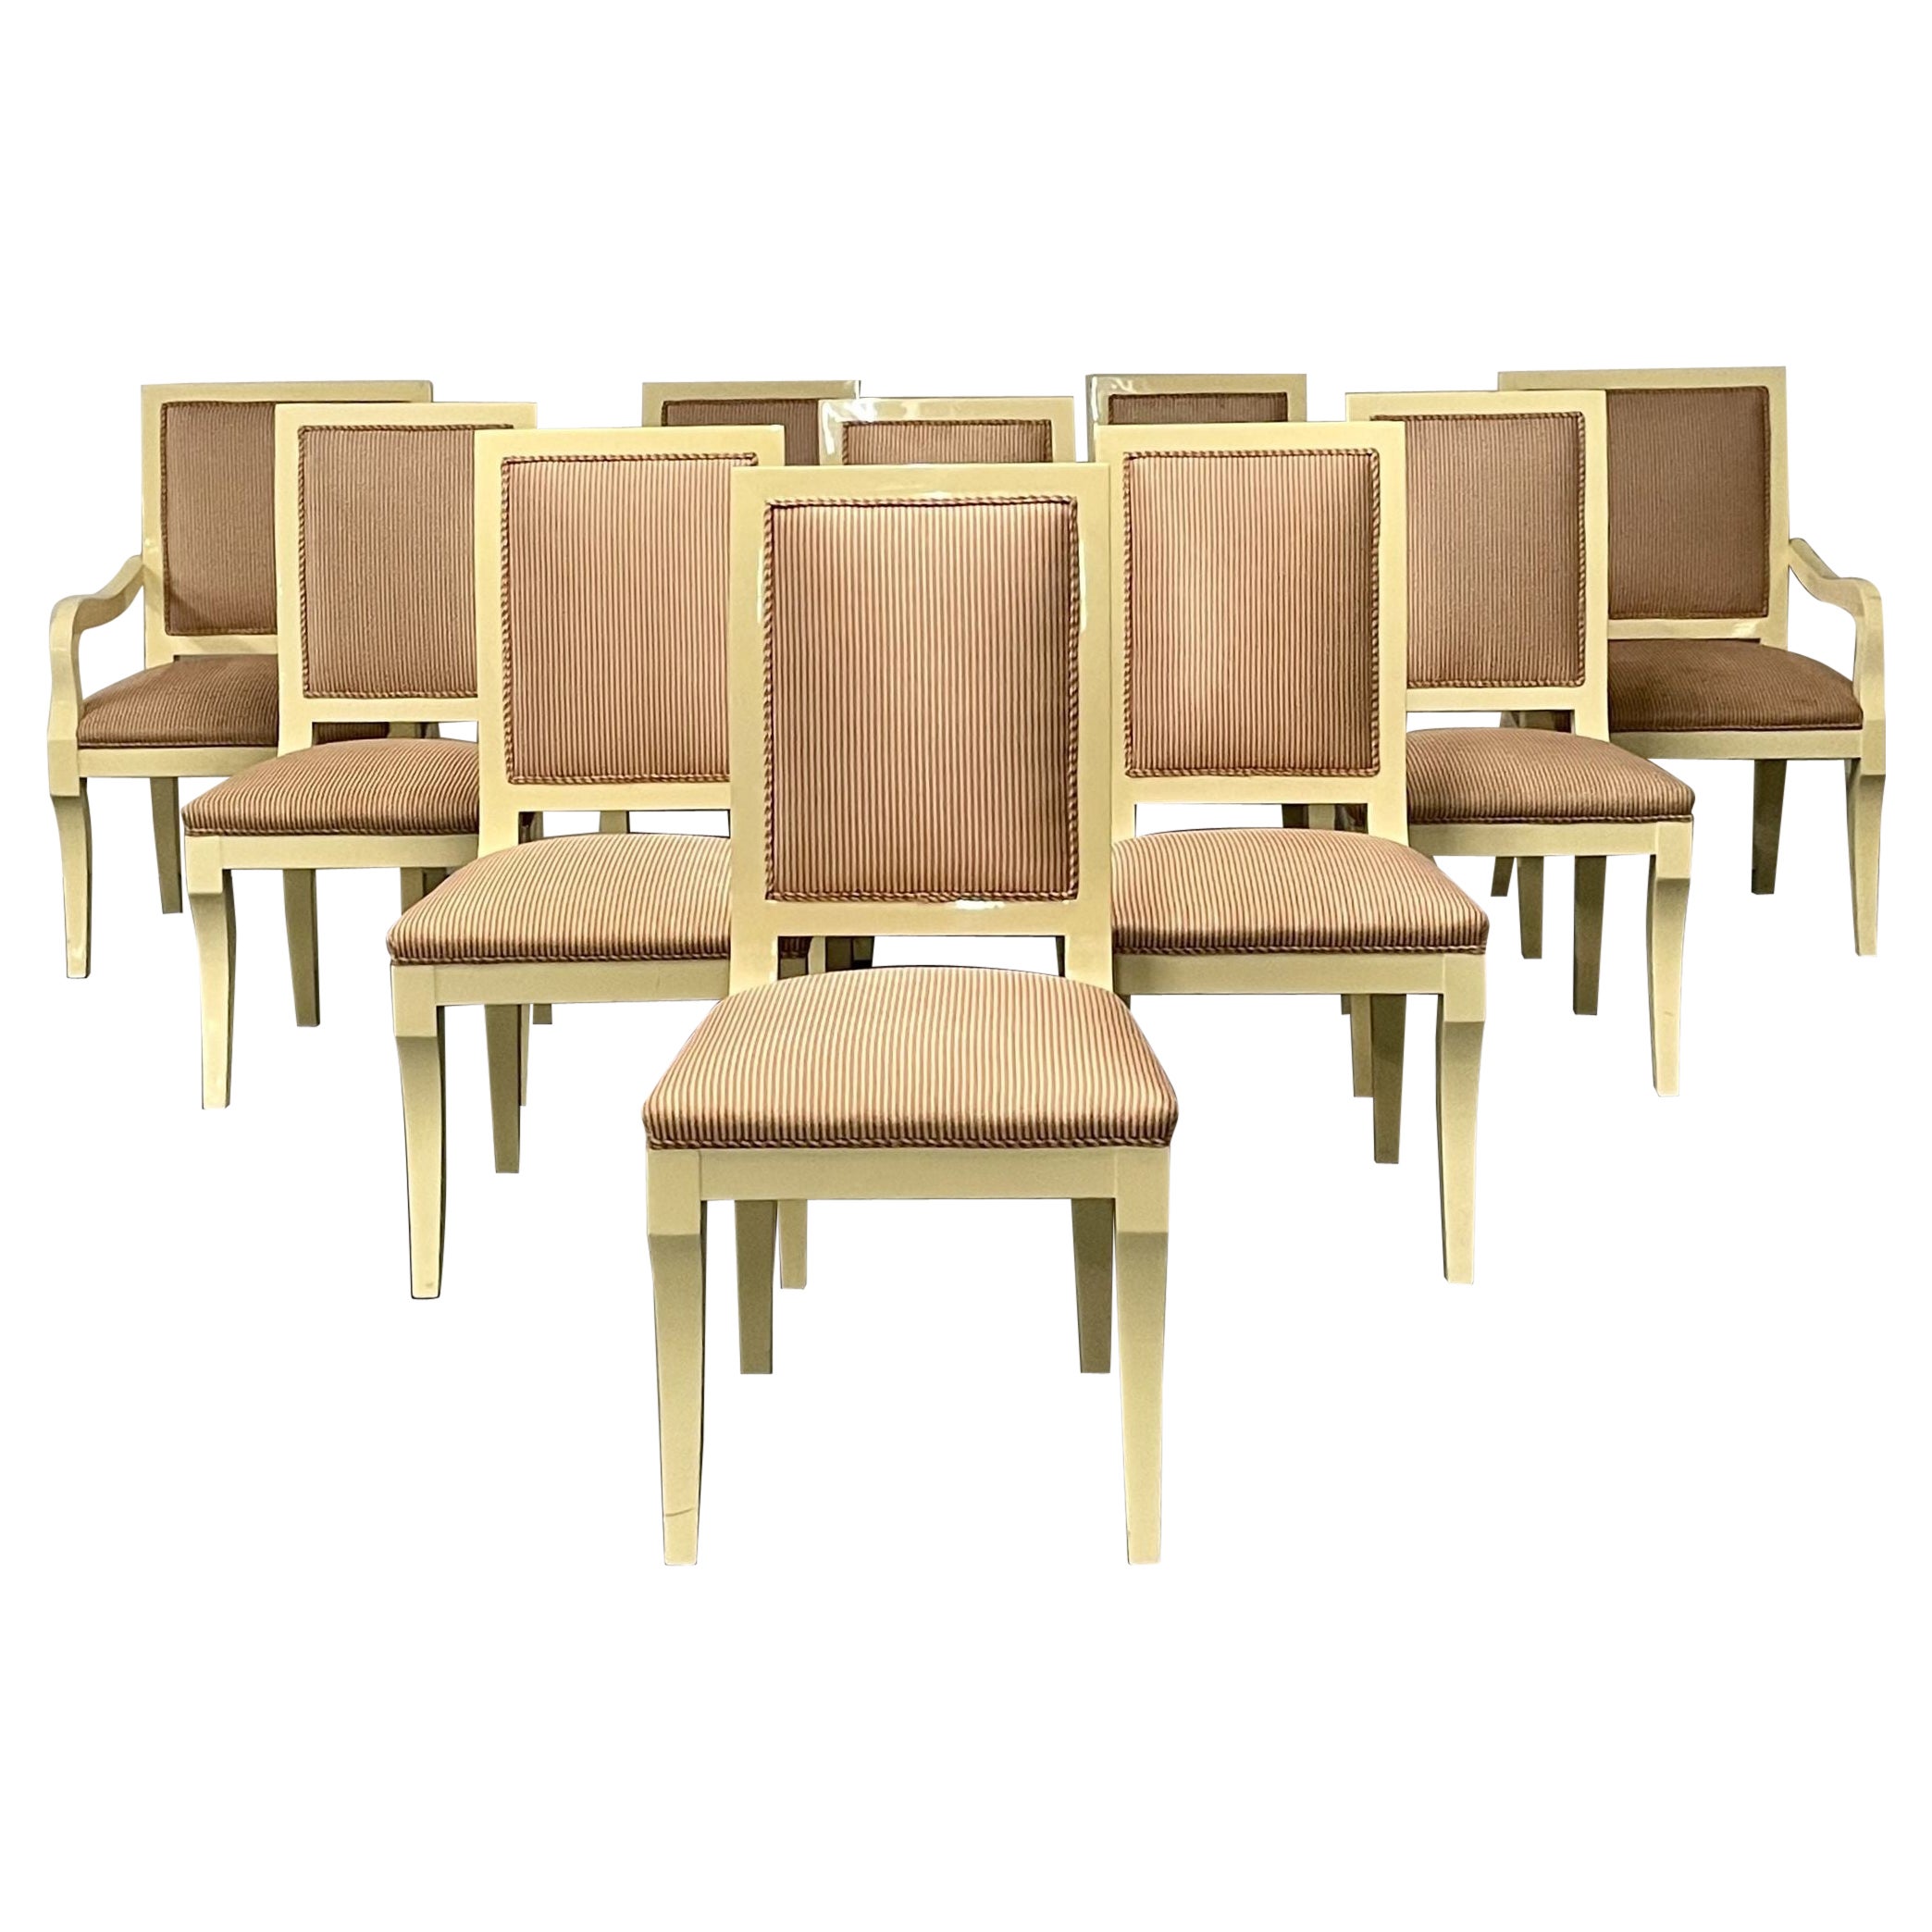 Zehn moderne Esszimmerstühle, weiß lackiert, Ron Seff, maßgefertigt